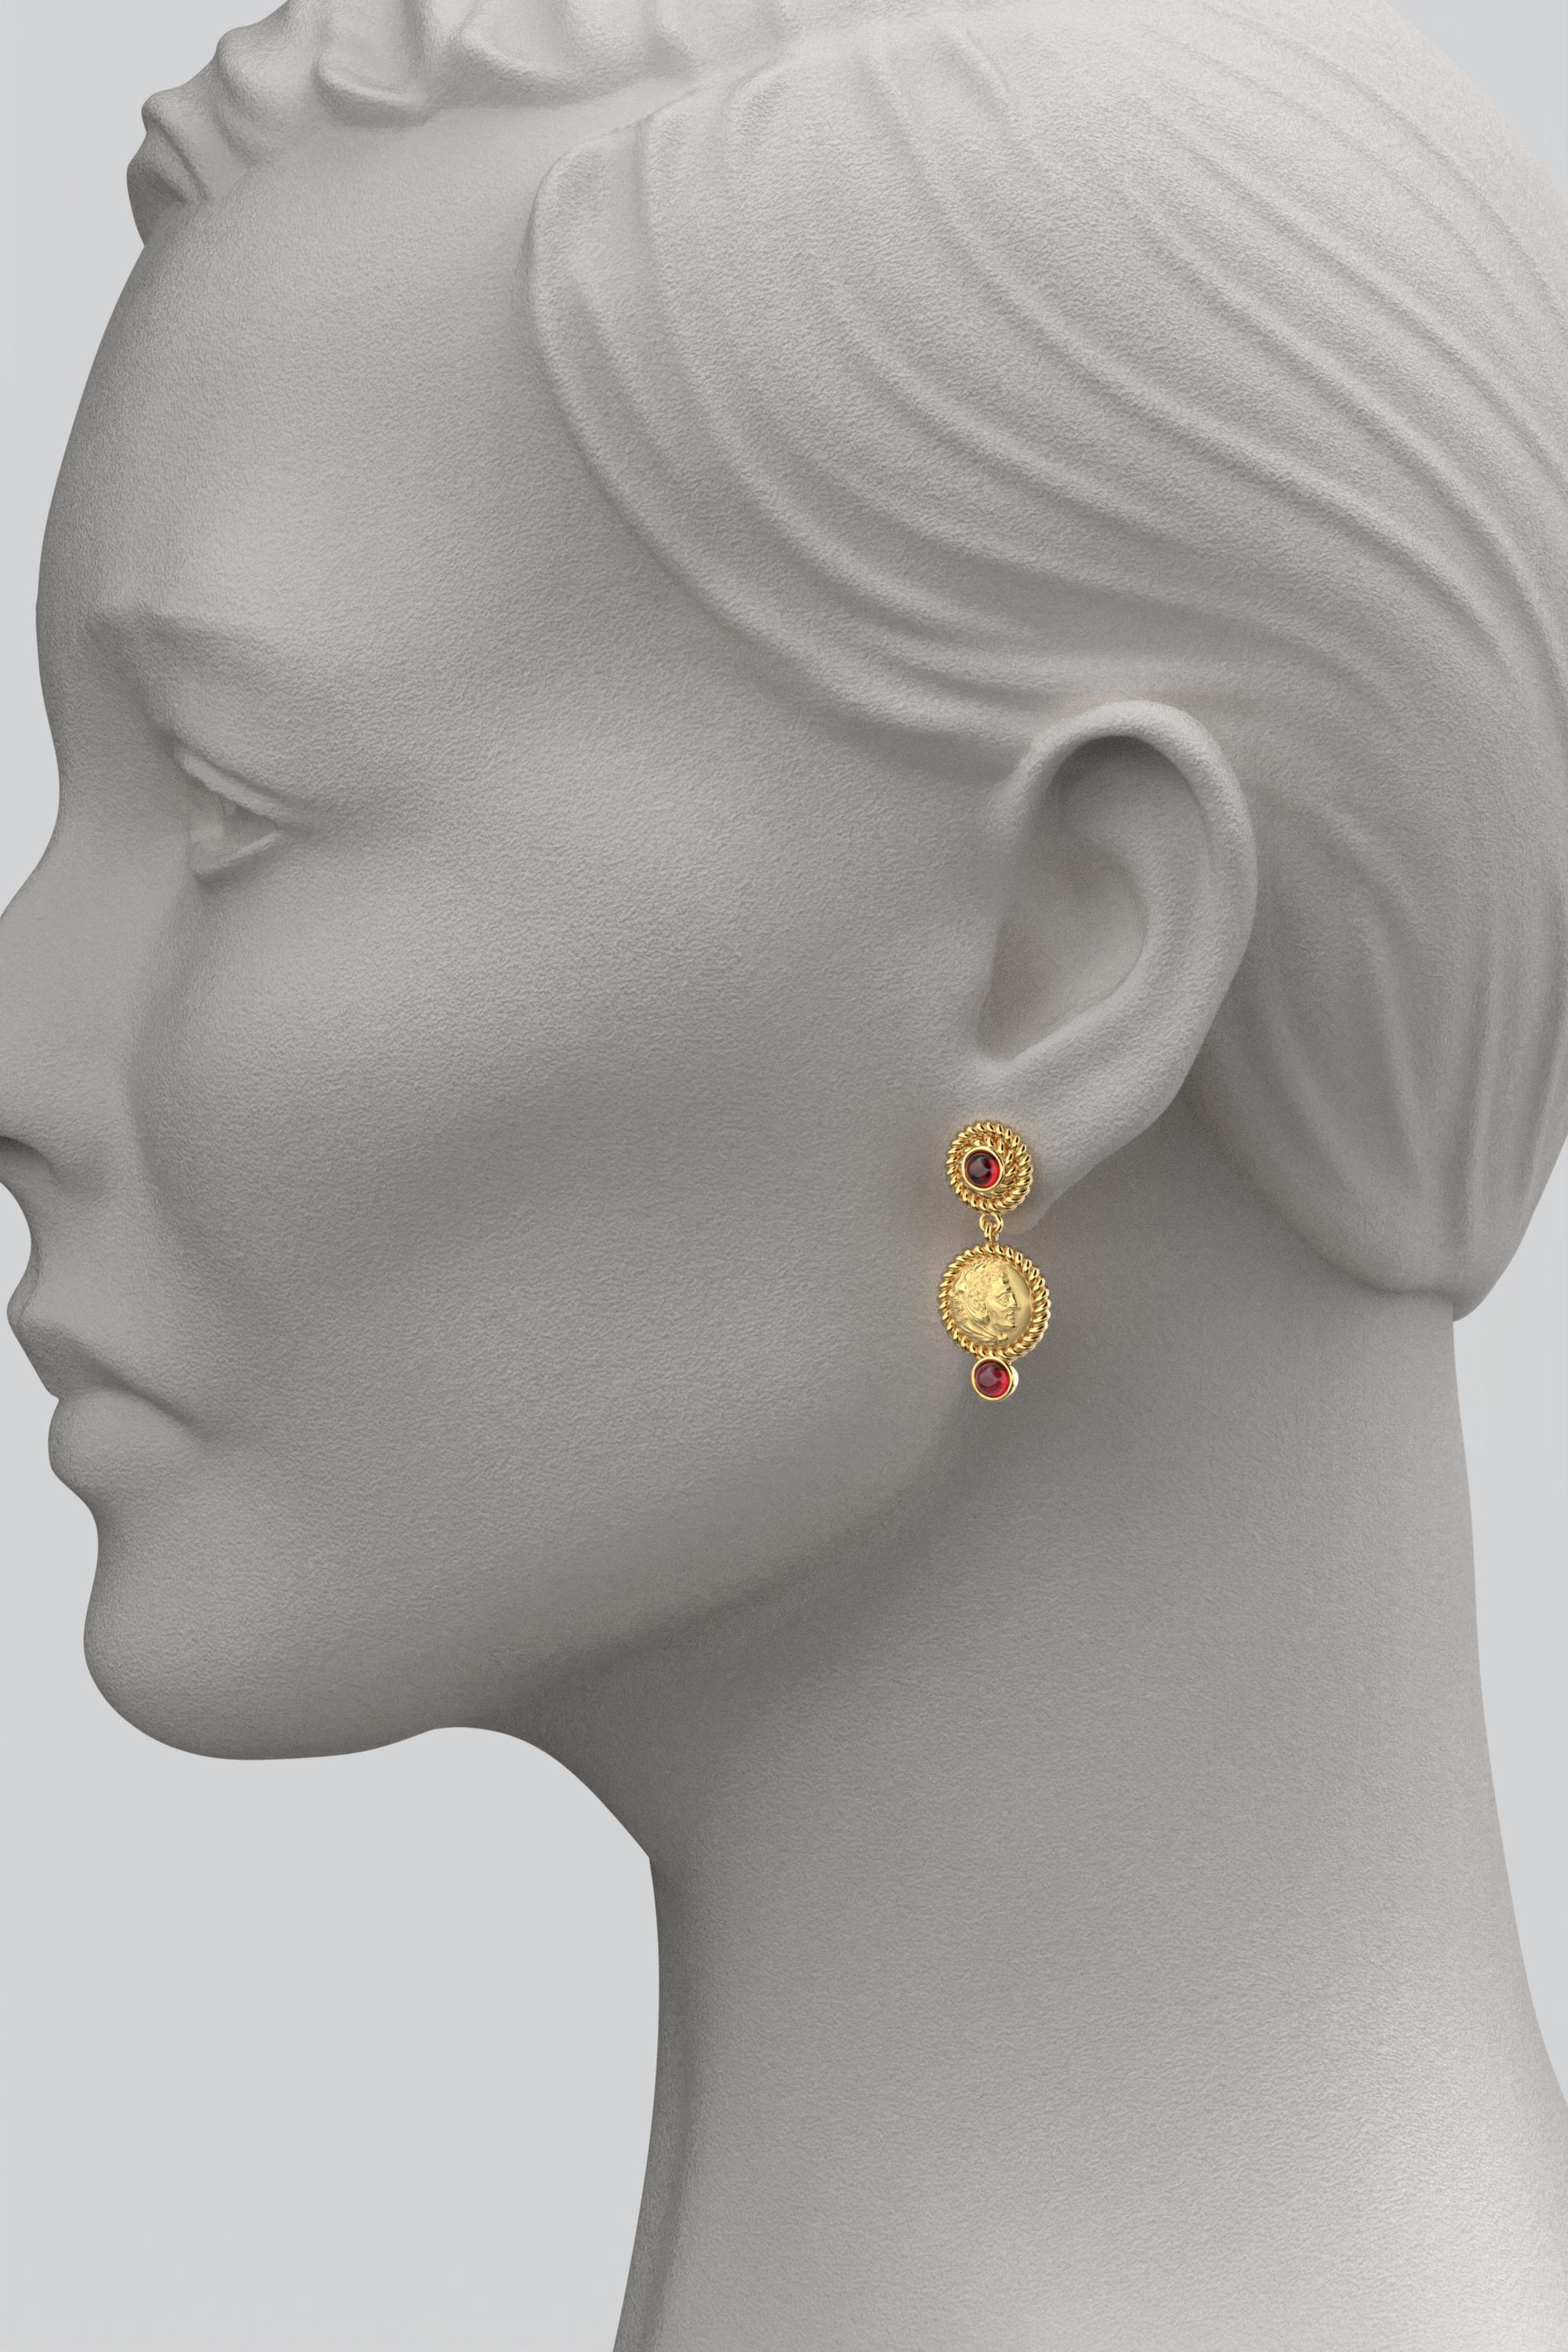 Greek Revival Italian Jewelry  14k Gold Dangle Earrings With Garnets  Ancient Greek Style For Sale